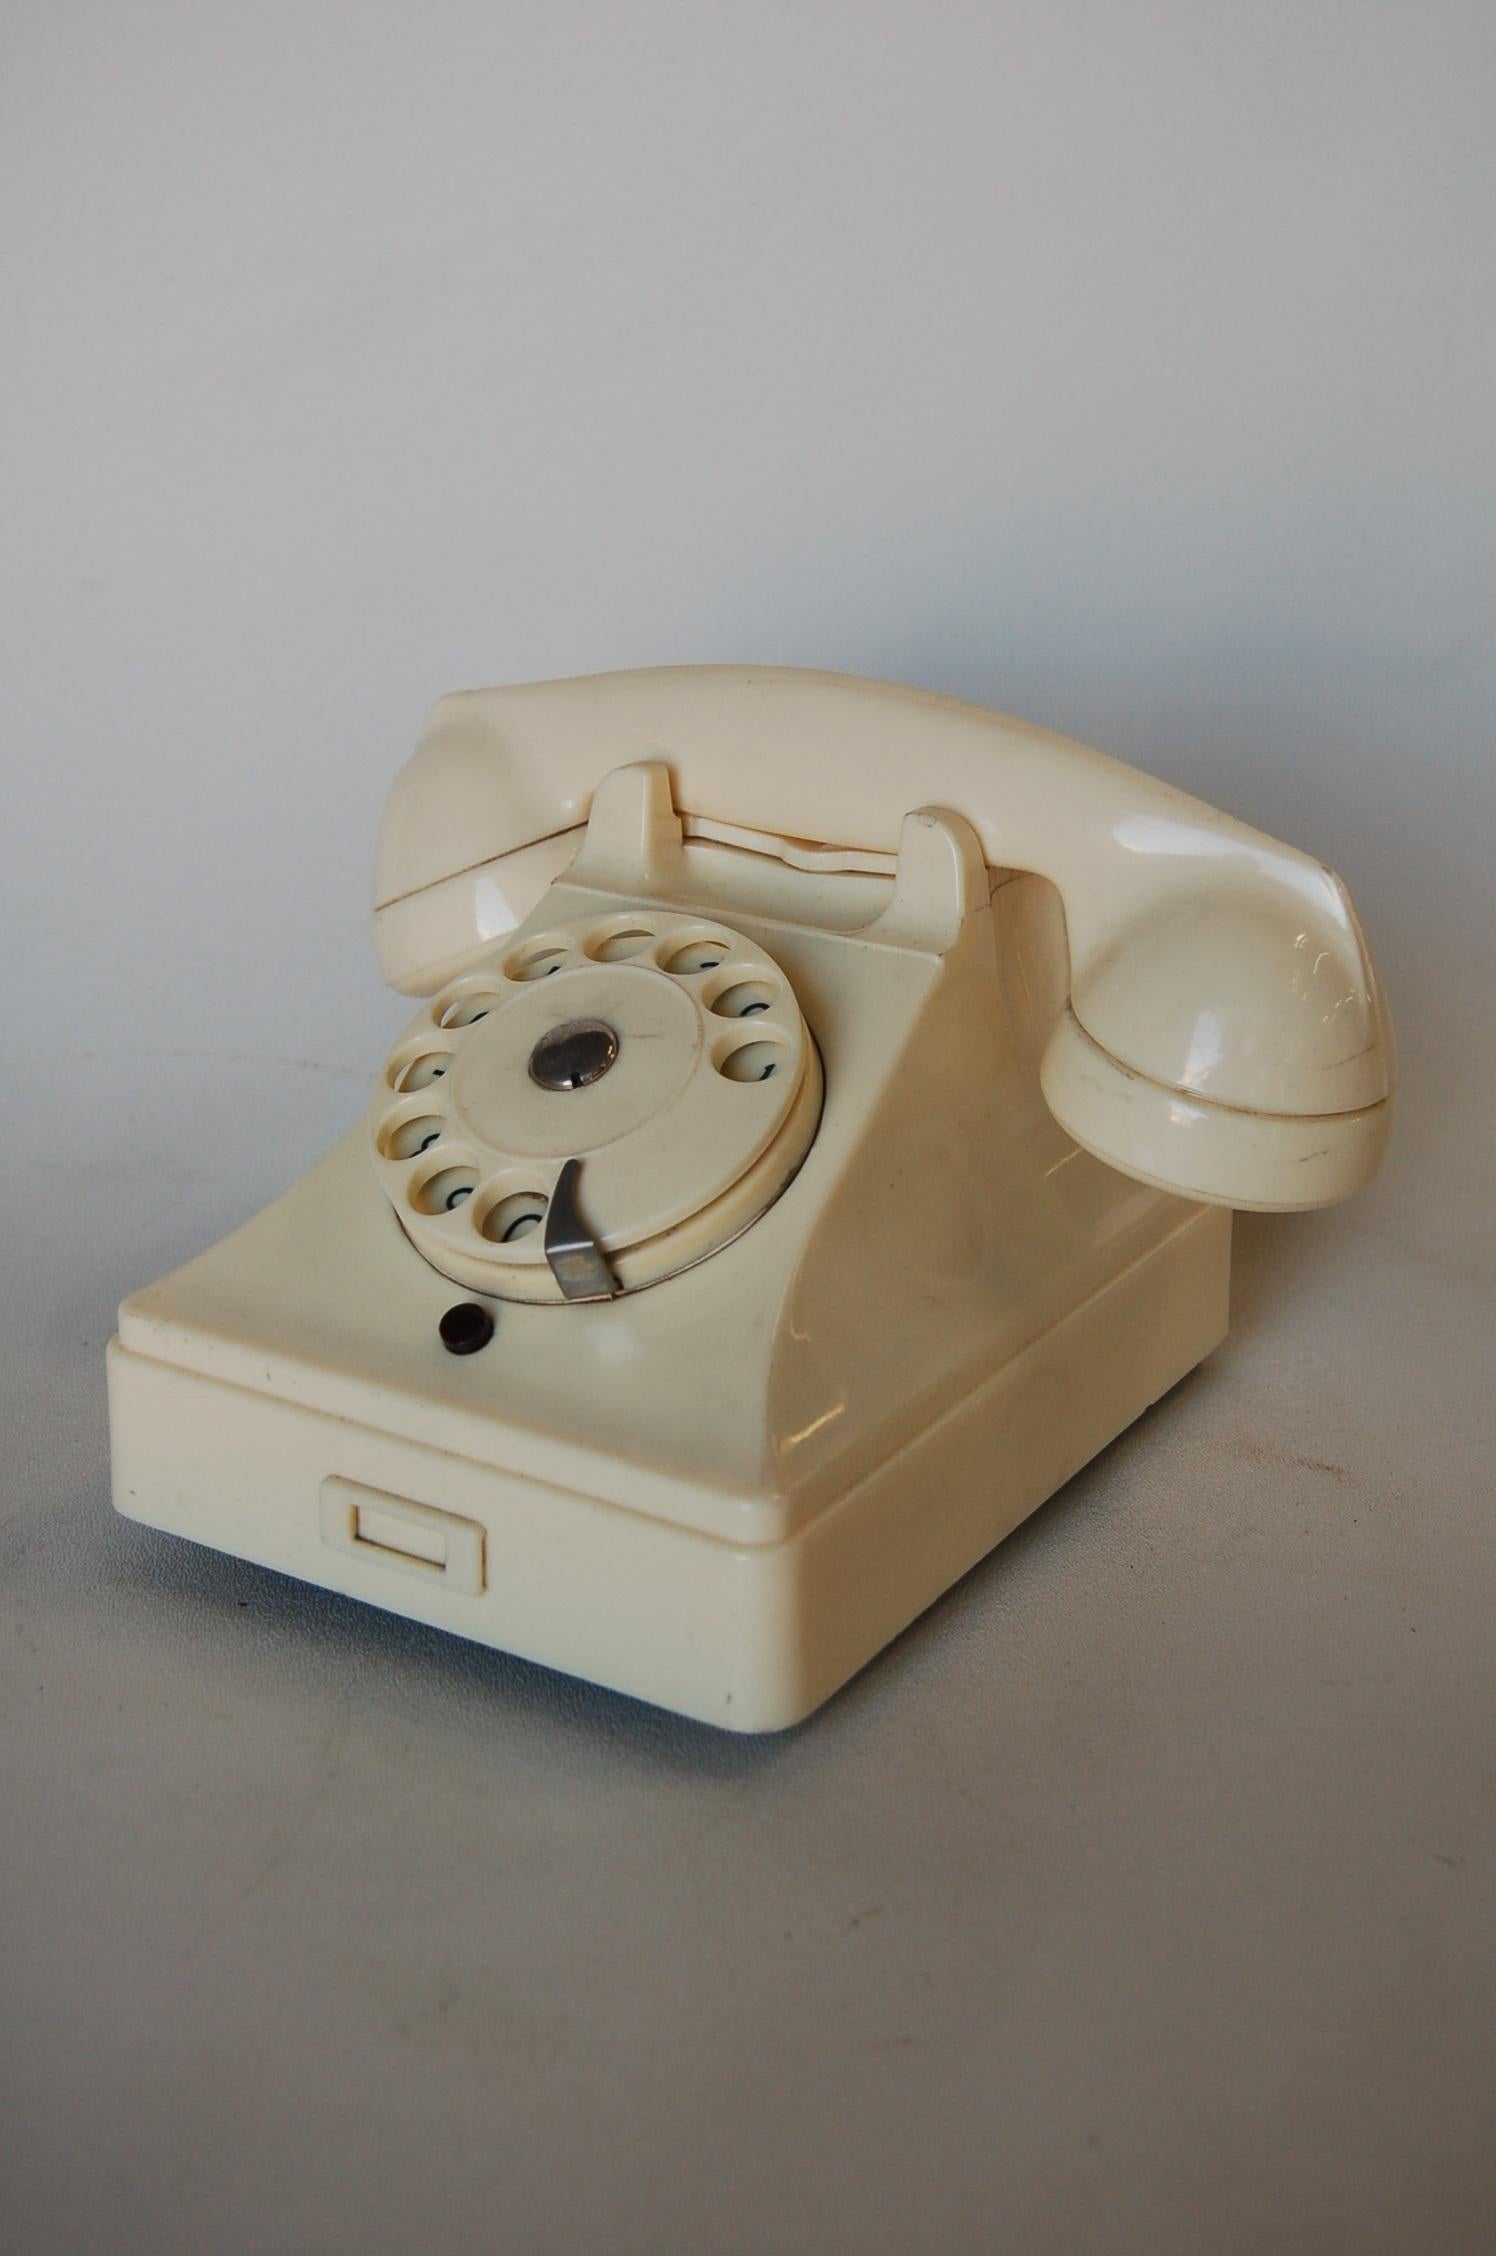 Vieux téléphone de table rotatif suédois blanc en bakélite par Ericsson, vers 1950. 

Mesure 6